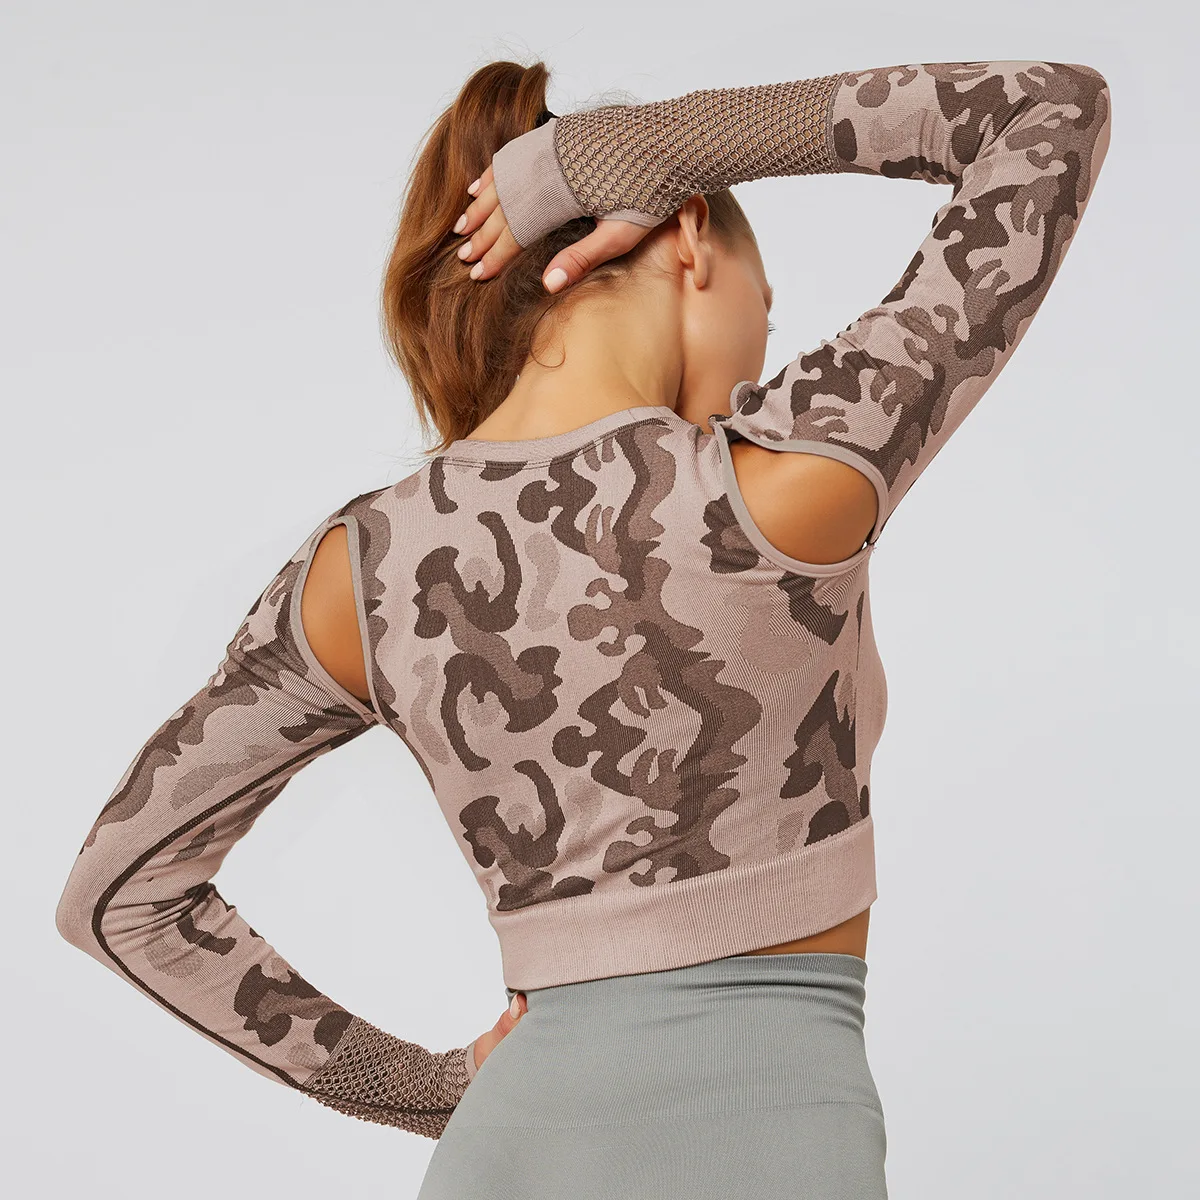 Camo Yoga спортивный короткий топ спортивная футболка с длинным рукавом Топы для тренировок для женщин бесшовная футболка для спортзала женские фитнес-футболки спортивная одежда